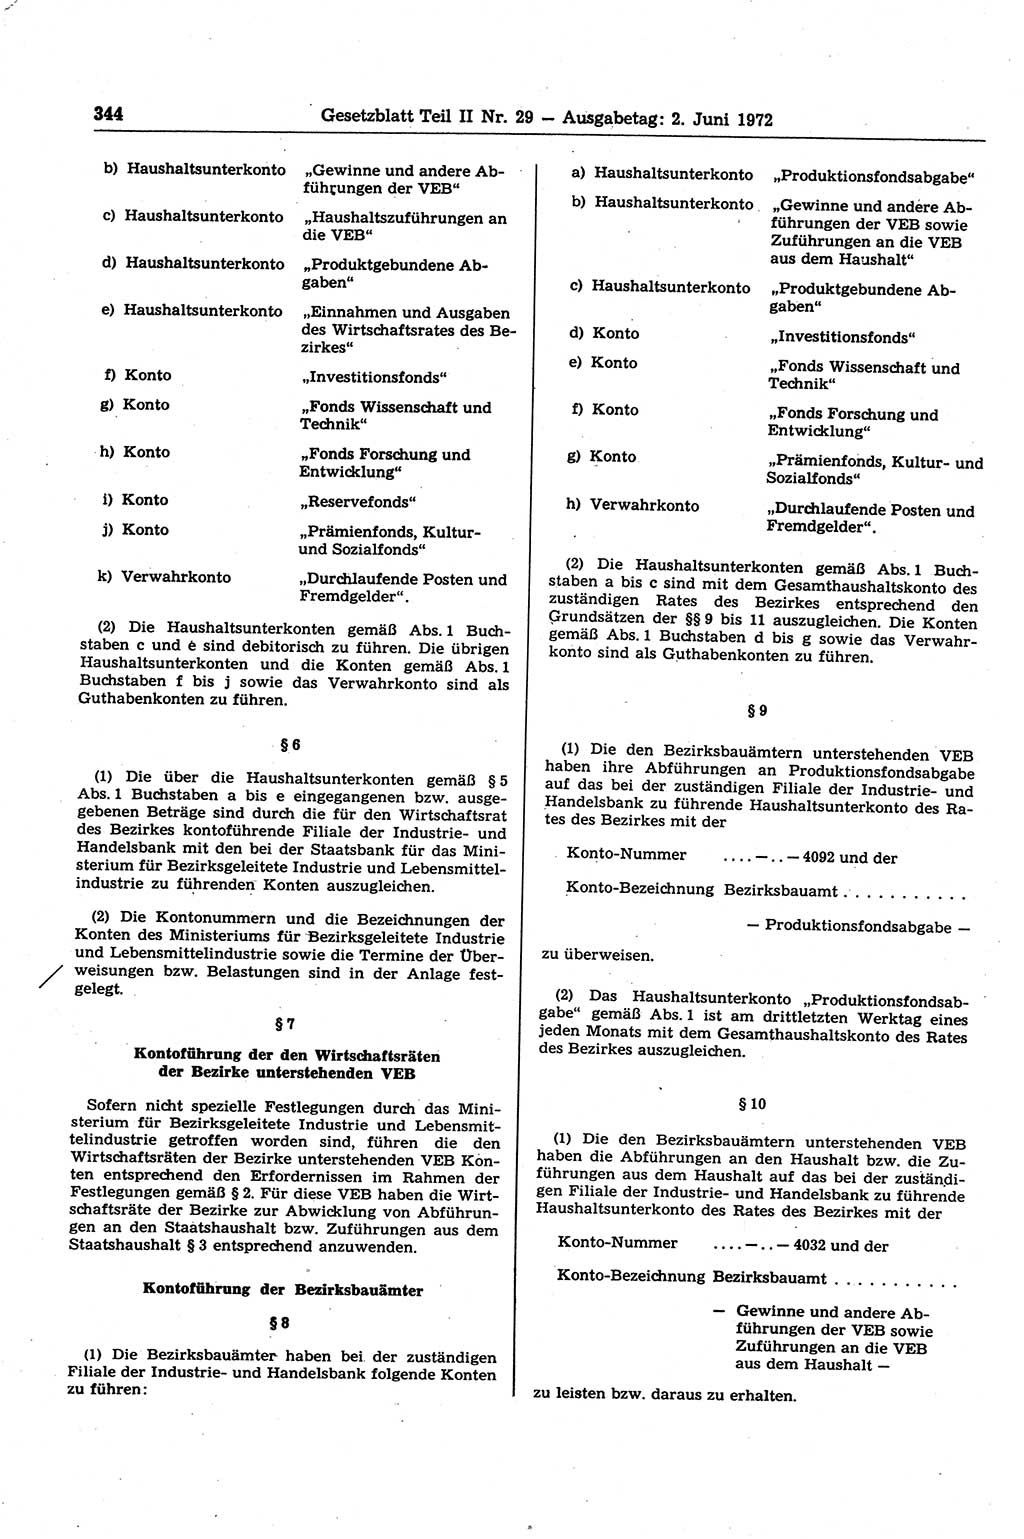 Gesetzblatt (GBl.) der Deutschen Demokratischen Republik (DDR) Teil ⅠⅠ 1972, Seite 344 (GBl. DDR ⅠⅠ 1972, S. 344)